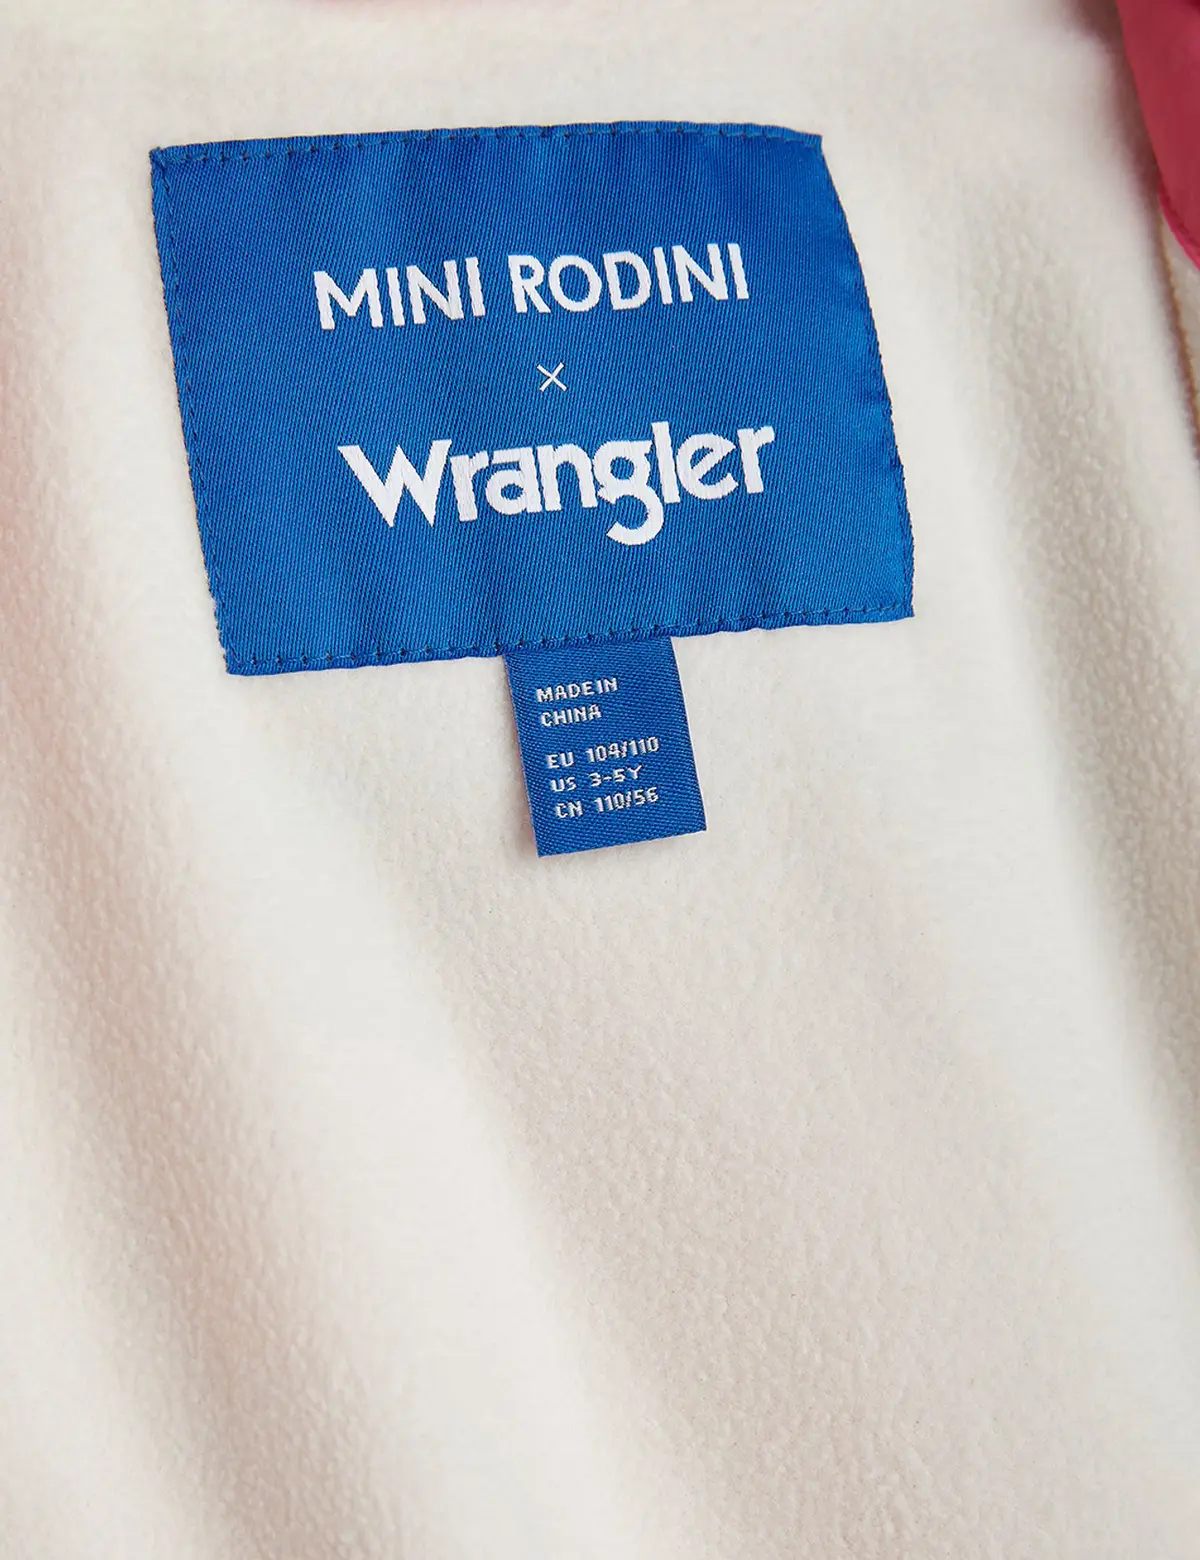 M.Rodini x Wrangler Padded Jacket Pink-image-6